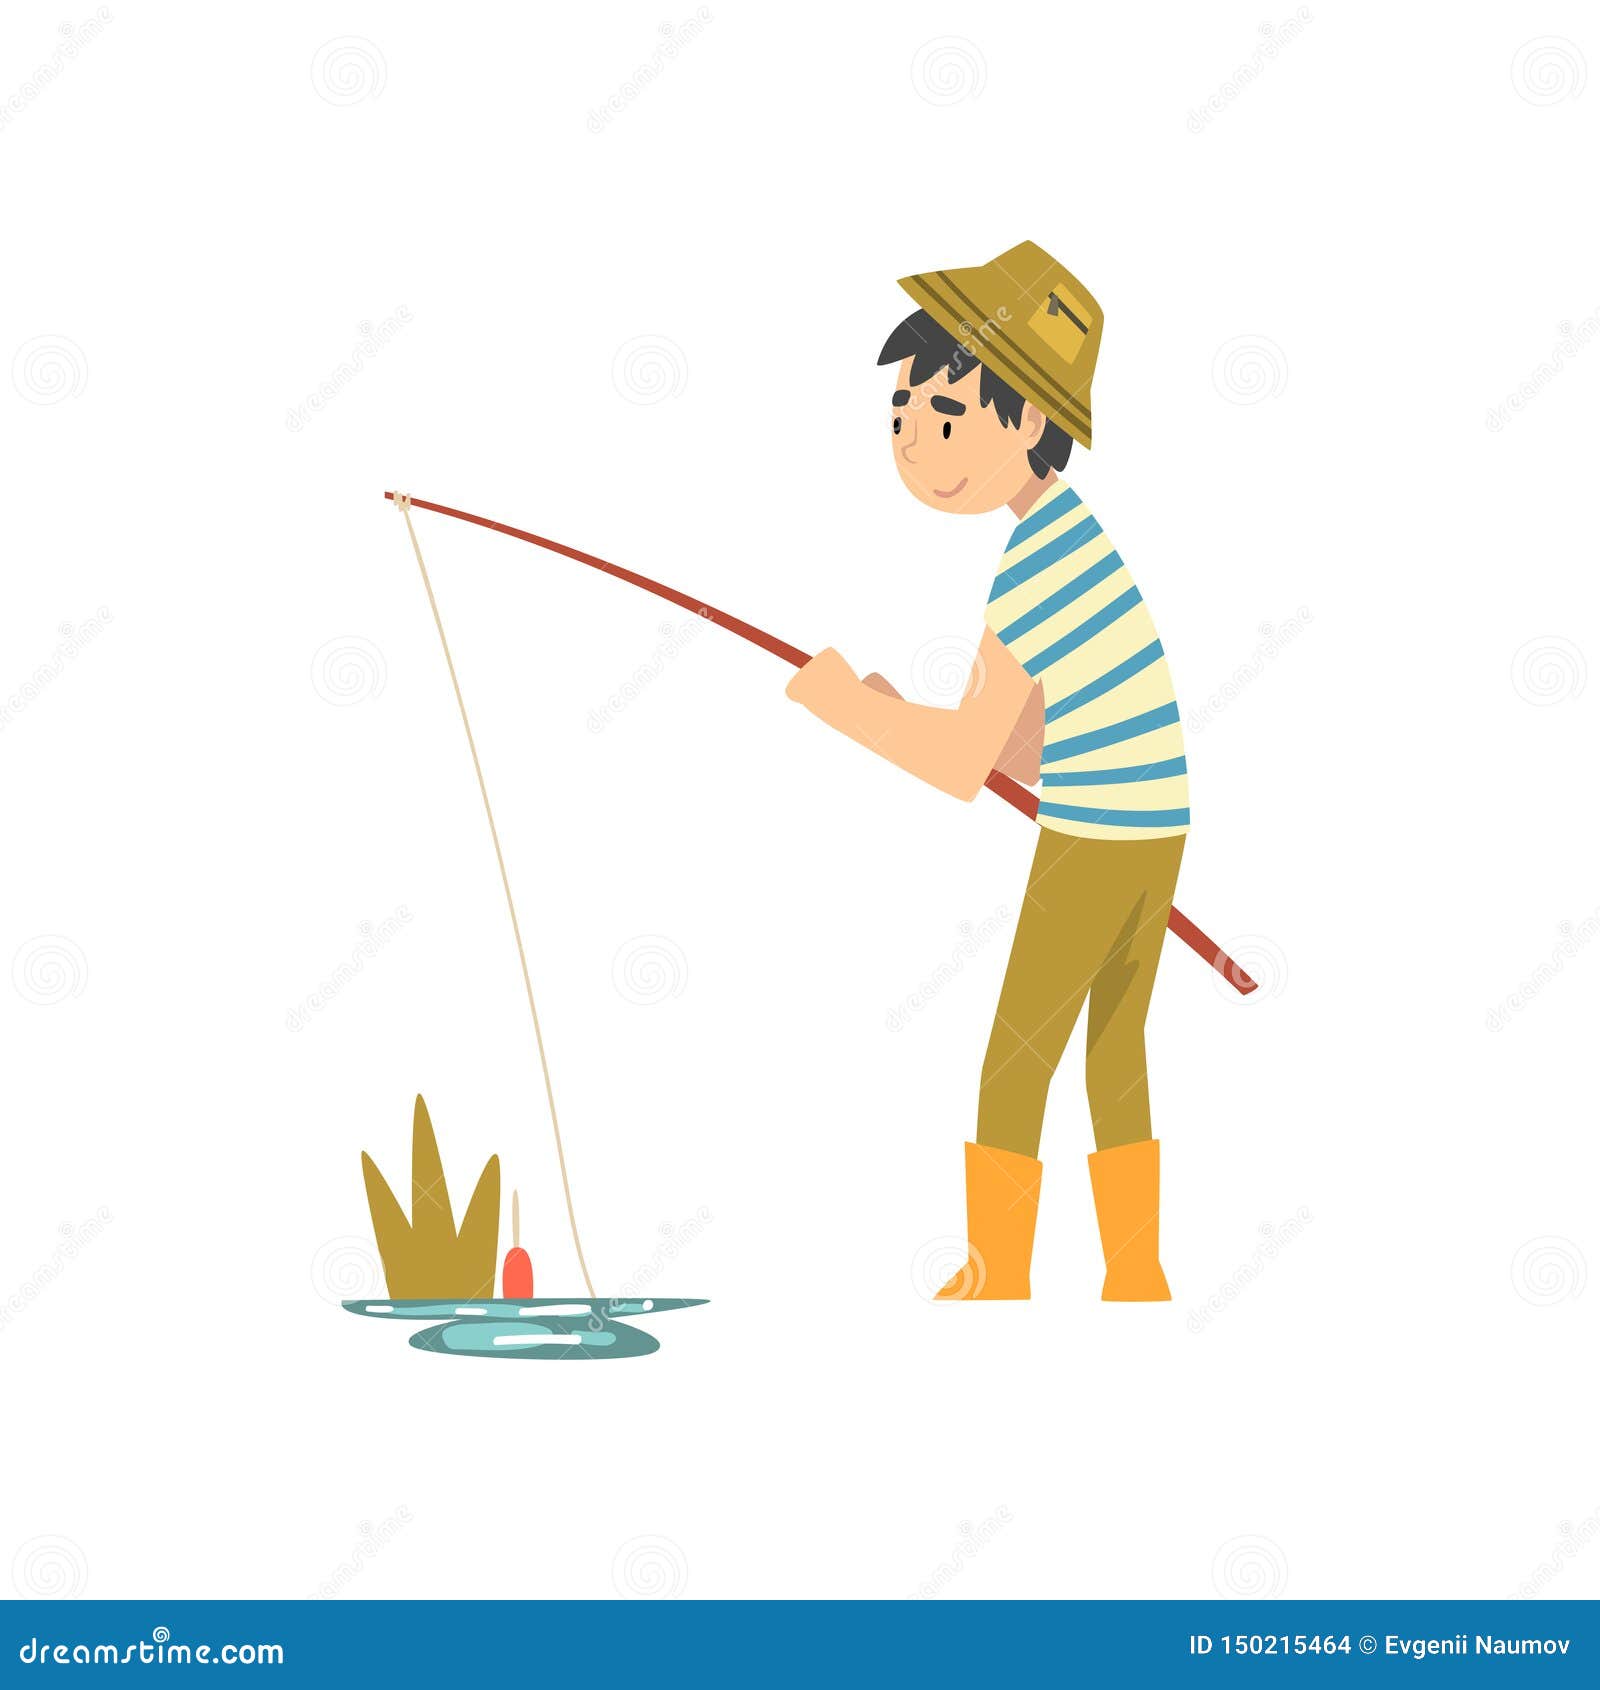 Удочка найти слова. Мальчик ловит рыбу. Мальчик Рыбак. Мальчик с удочкой. Картина Рыбак с удочкой.